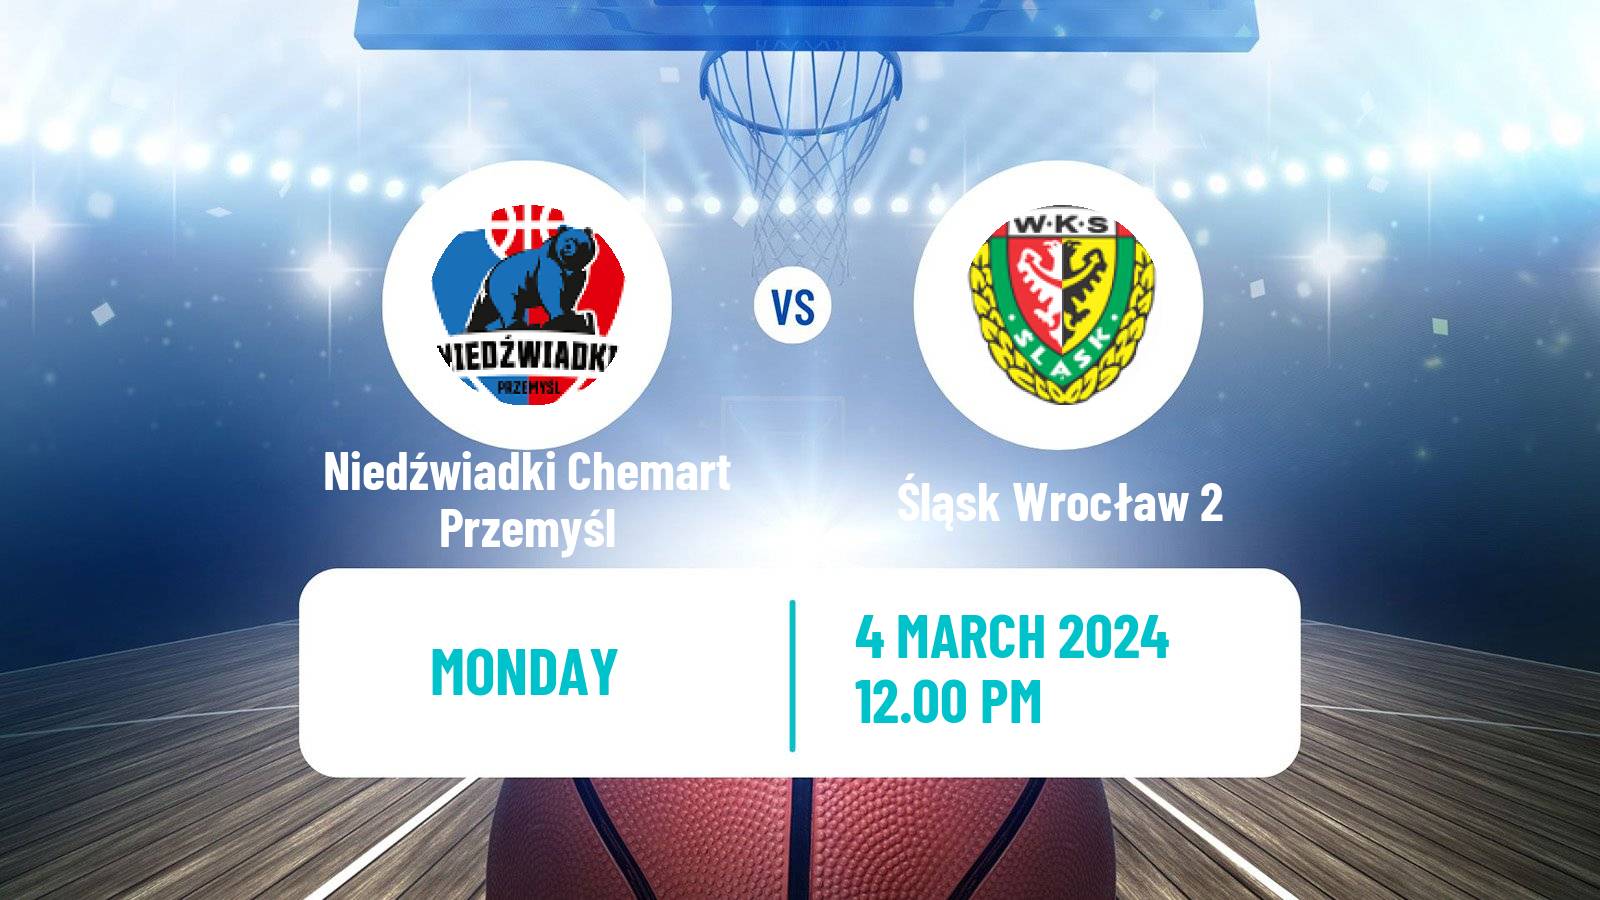 Basketball Polish 1 Liga Basketball Niedźwiadki Chemart Przemyśl - Śląsk Wrocław 2